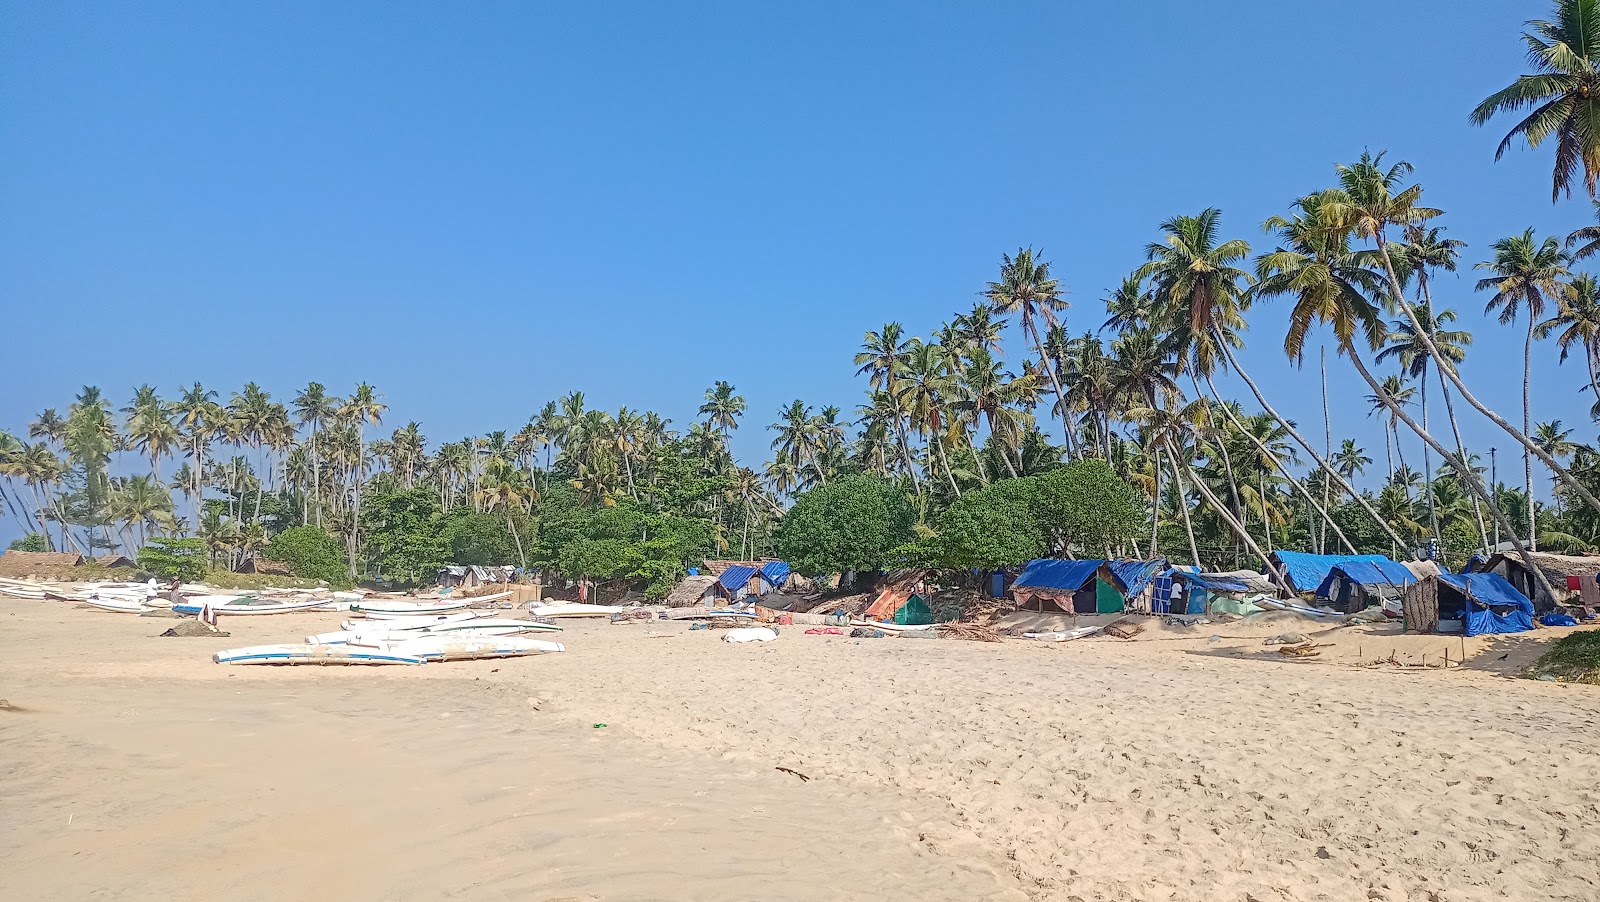 Chillakkal Beach'in fotoğrafı geniş plaj ile birlikte